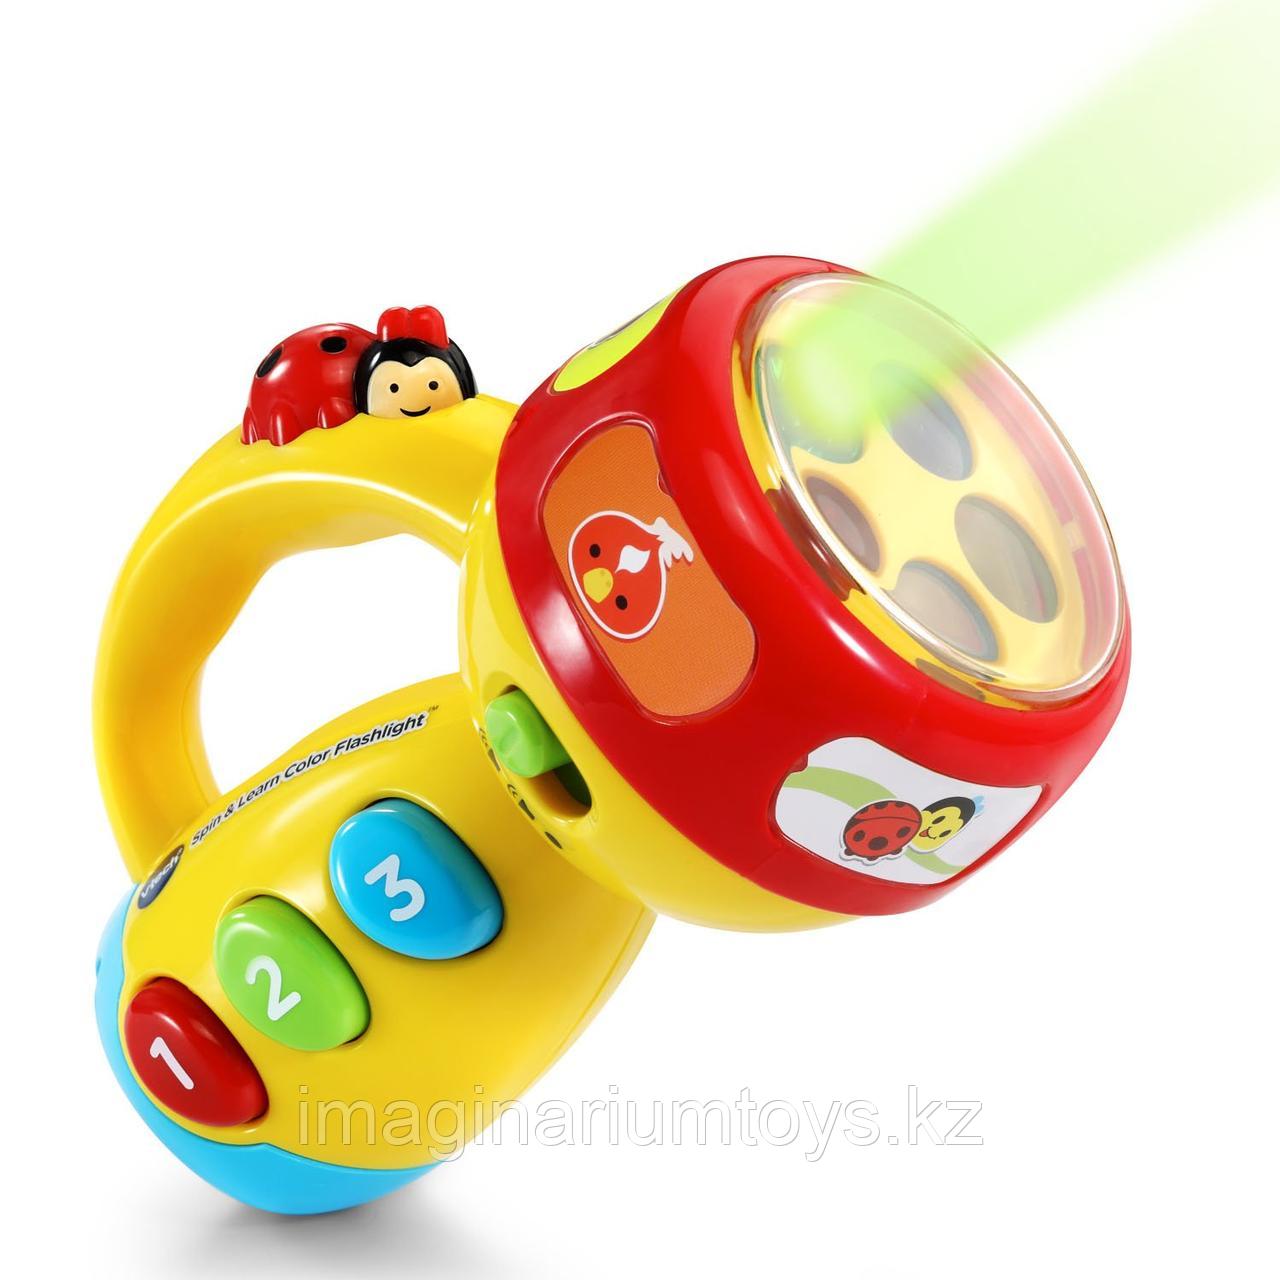 Развивающая игрушка «Фонарик» VTech со звуком и подсветкой, фото 1